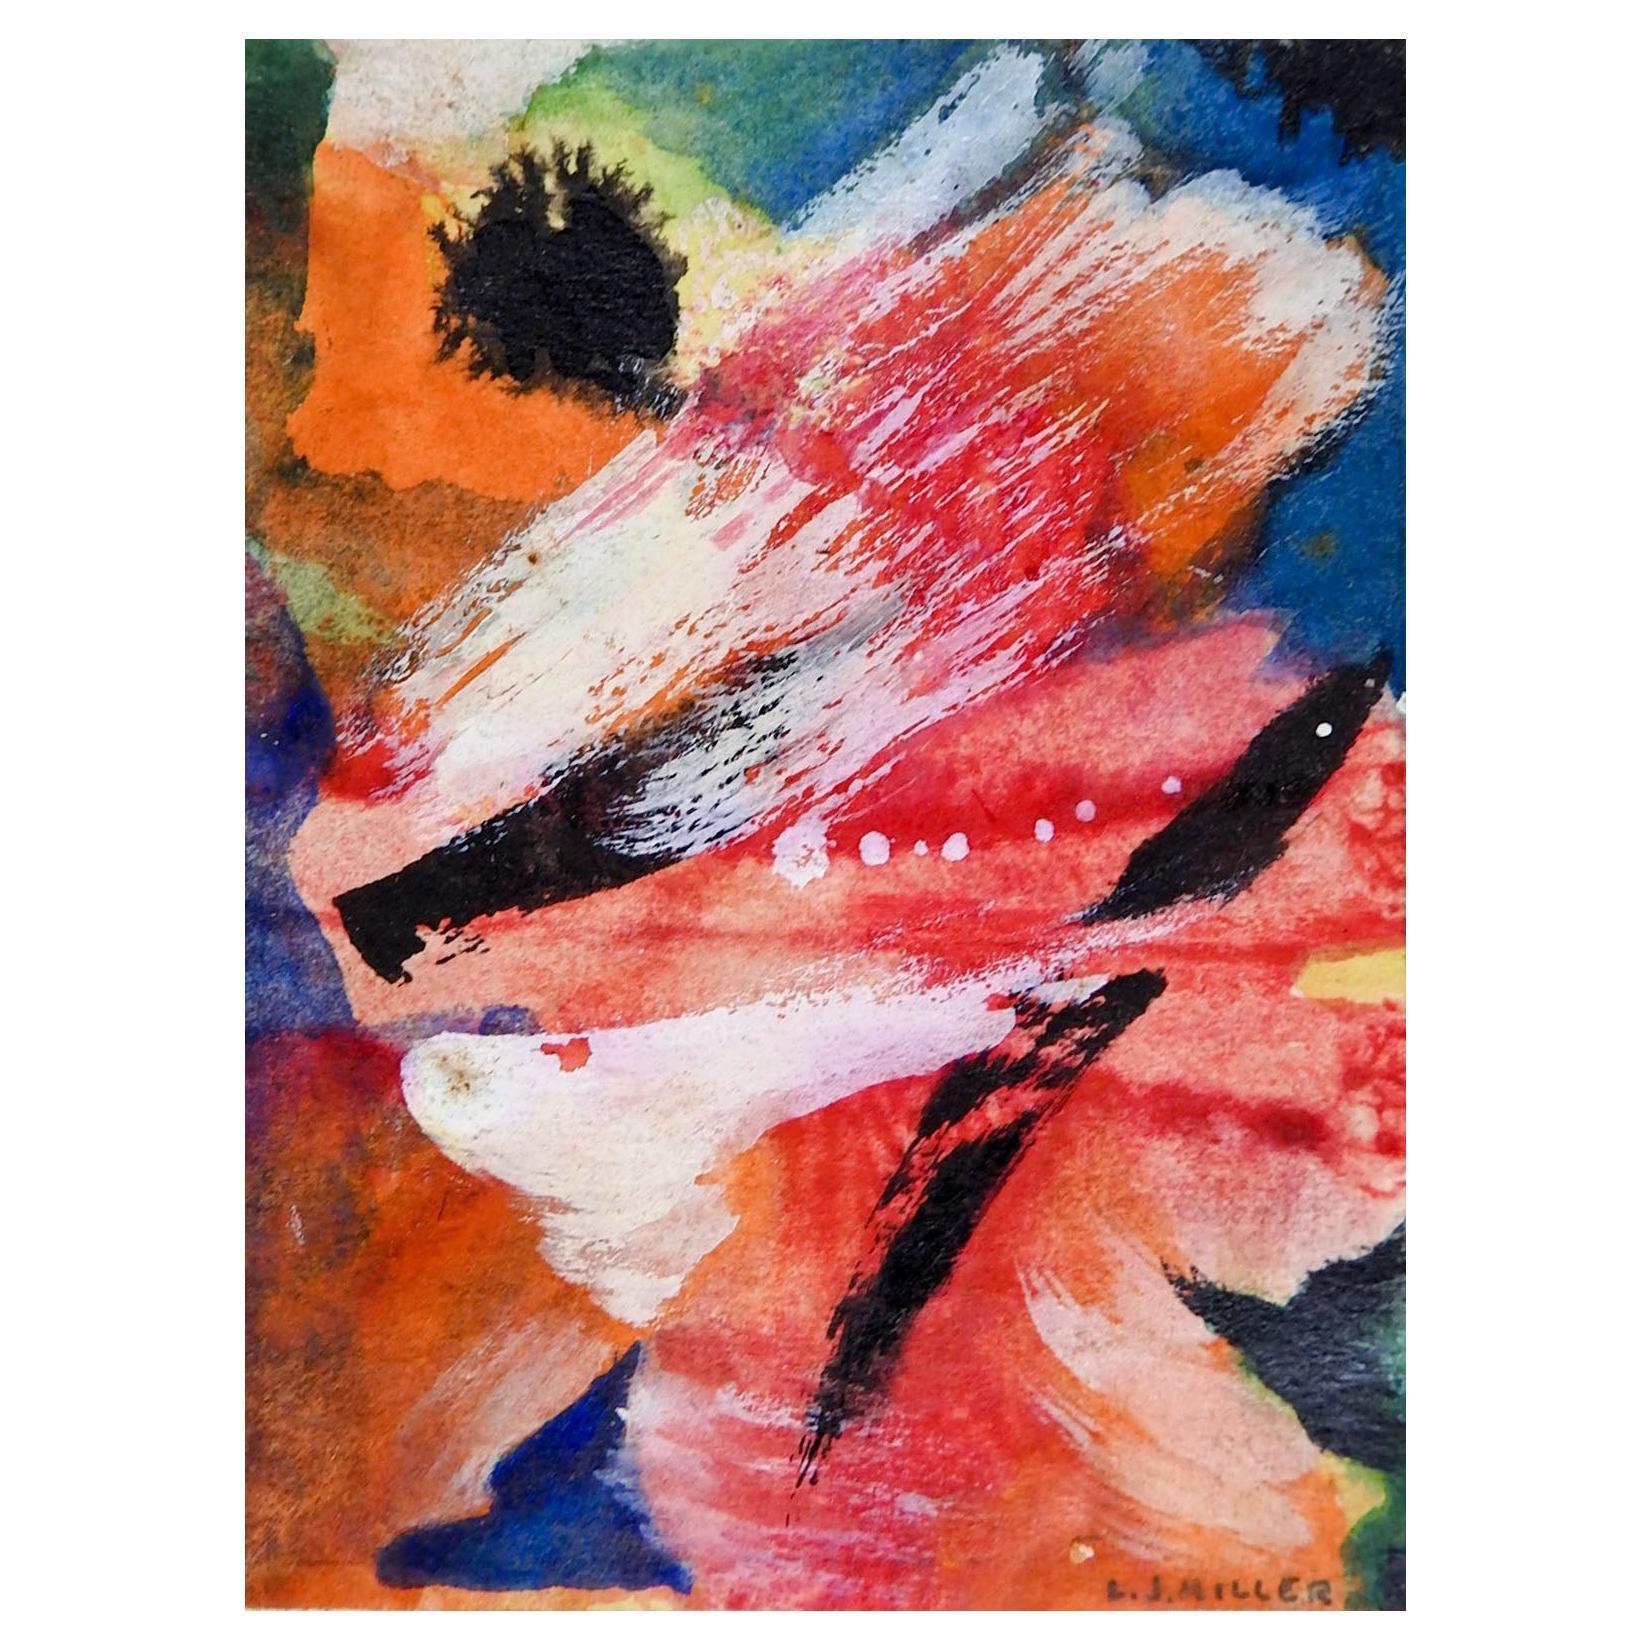 Petite peinture abstraite rose, blanche et orange des années 1930